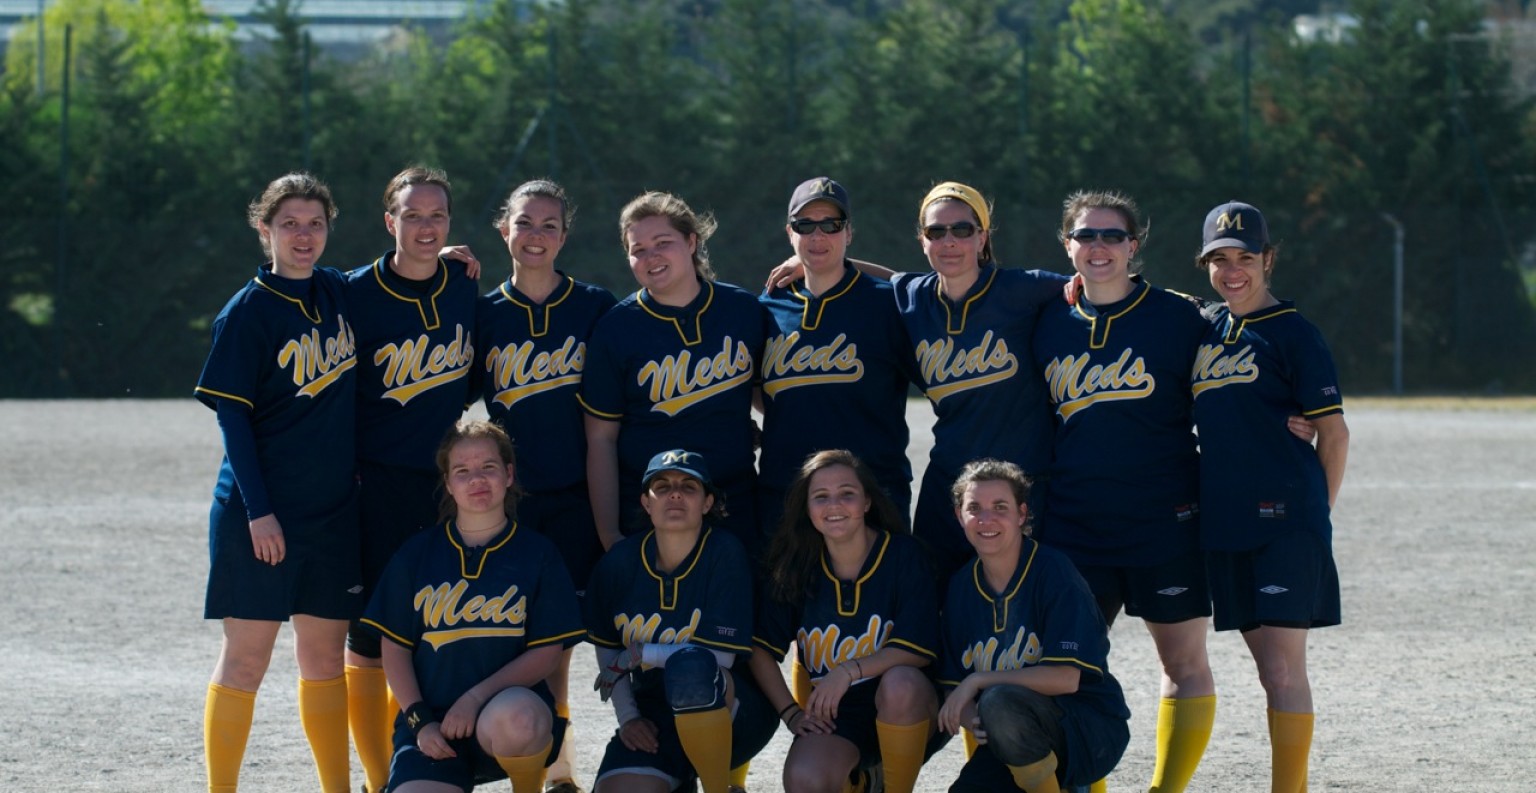 L'équipe féminine de softball des Meds. © Meds.